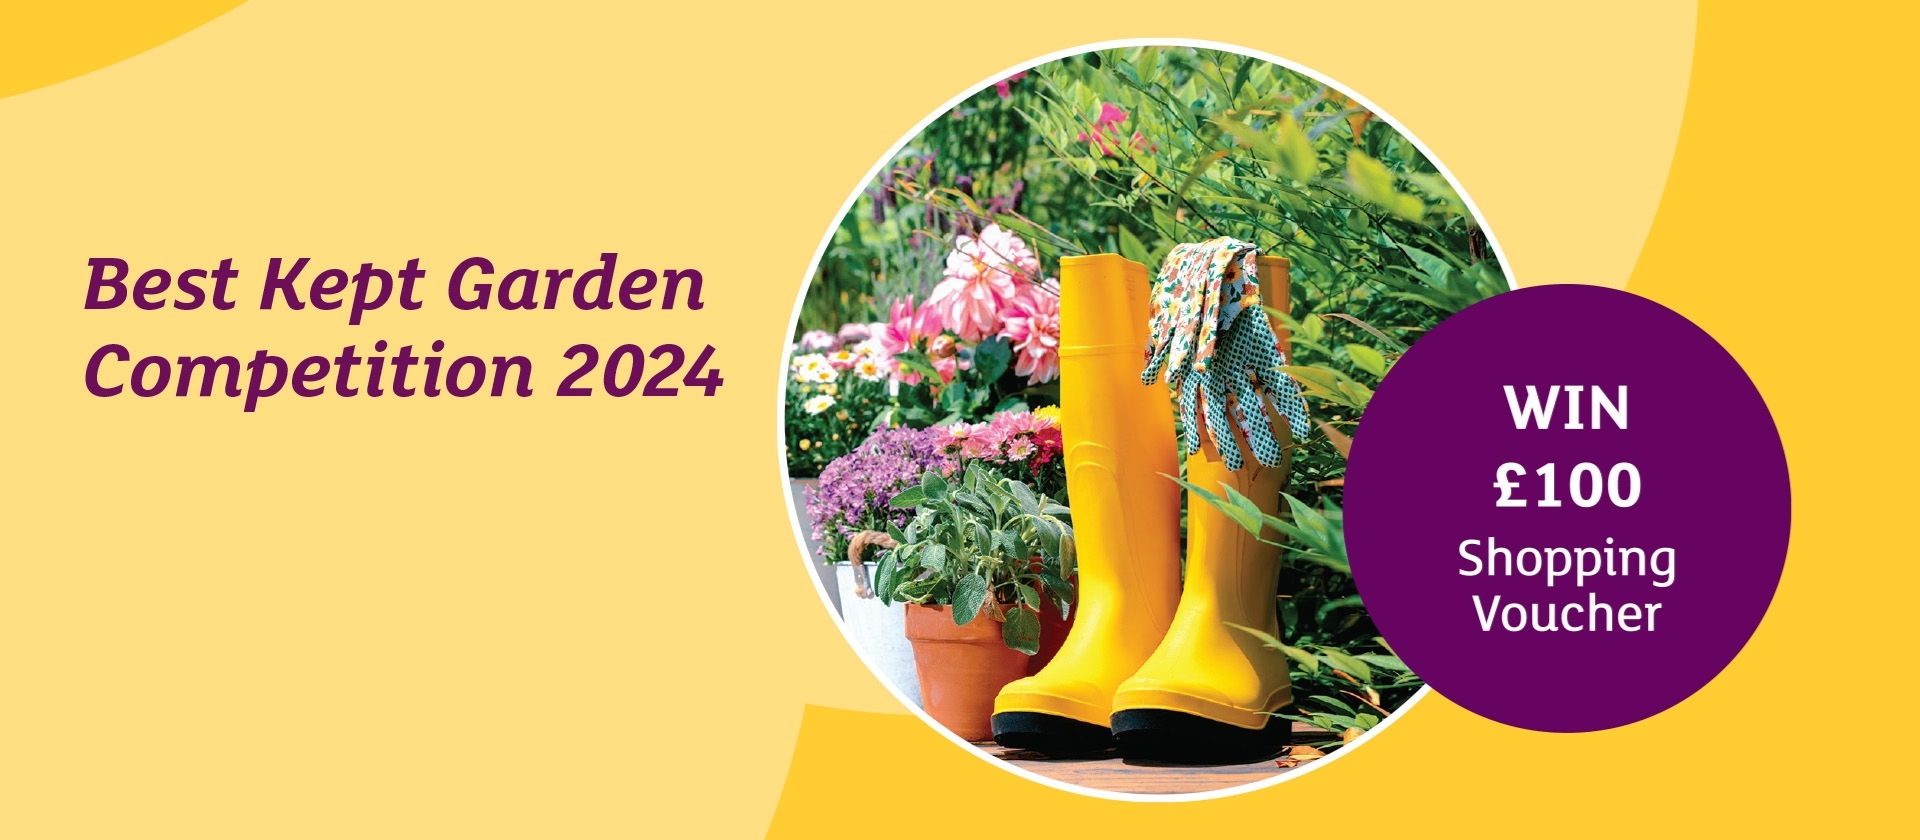 Best Kept Garden Award 2024